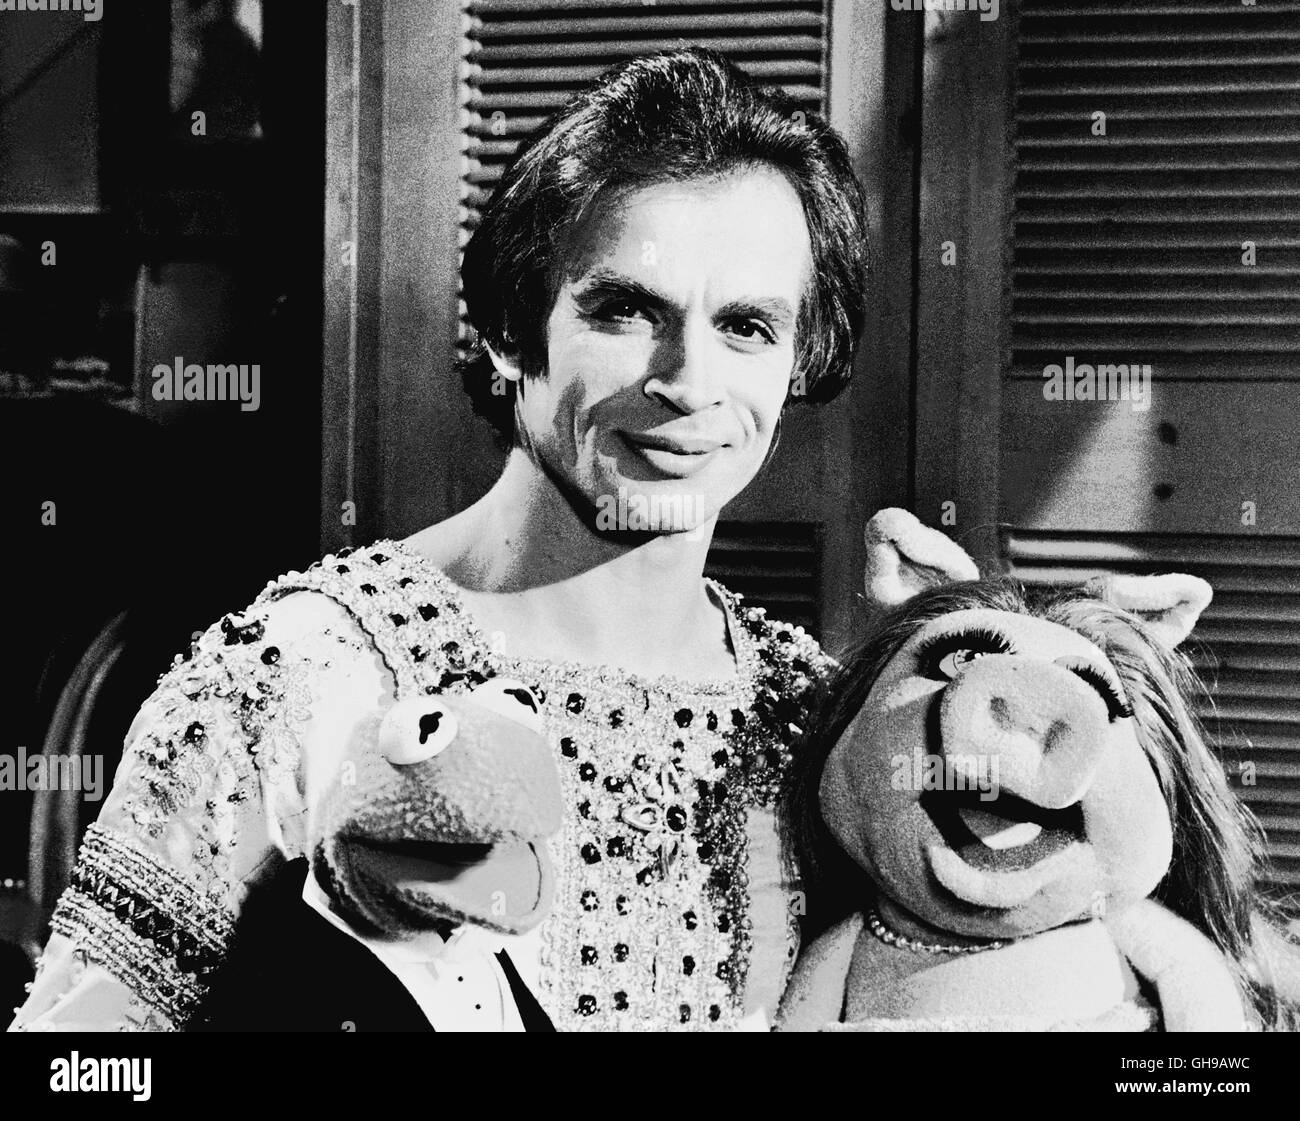 DIE MUPPETS-SHOW / The Muppets Show / Ballett-Star RUDOLF NUREJEW, hier mit Miss Piggy, zu Gast in der Muppets-Show (80er Jahre). aka. The Muppets Show Stock Photo